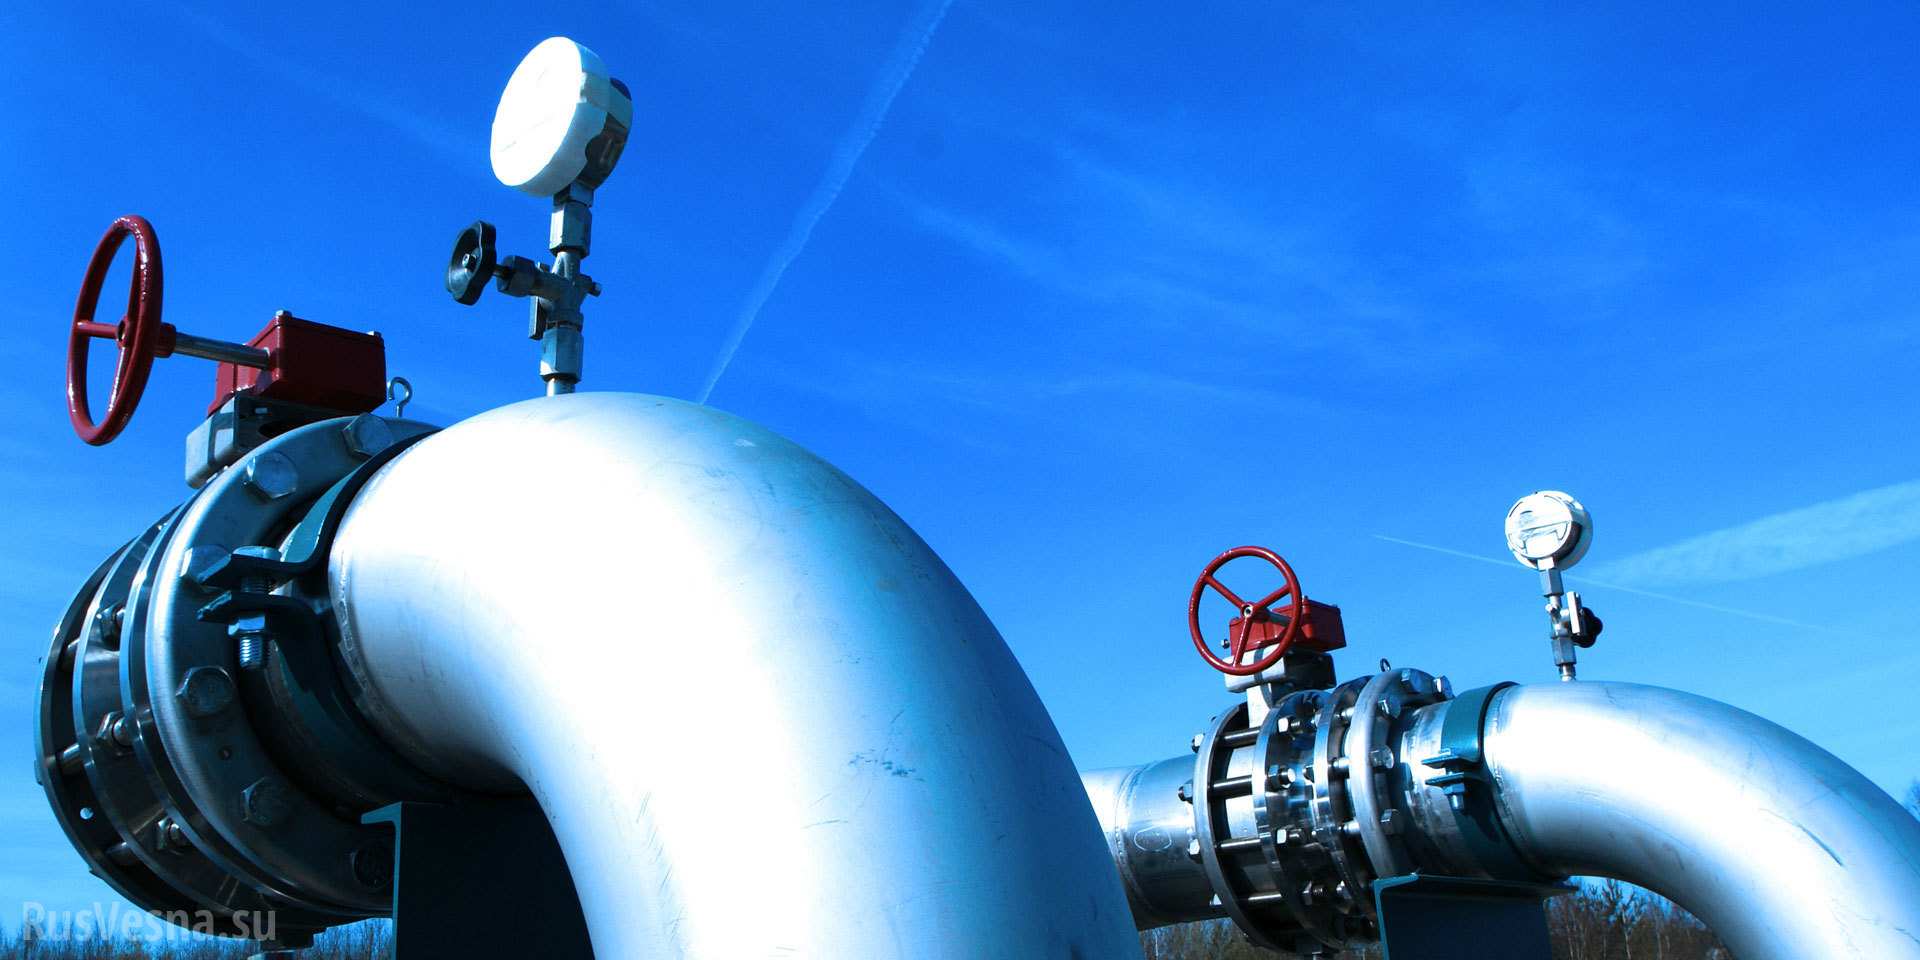 Запаси газу в ПСГ впали до 11,7 млрд кубометрів